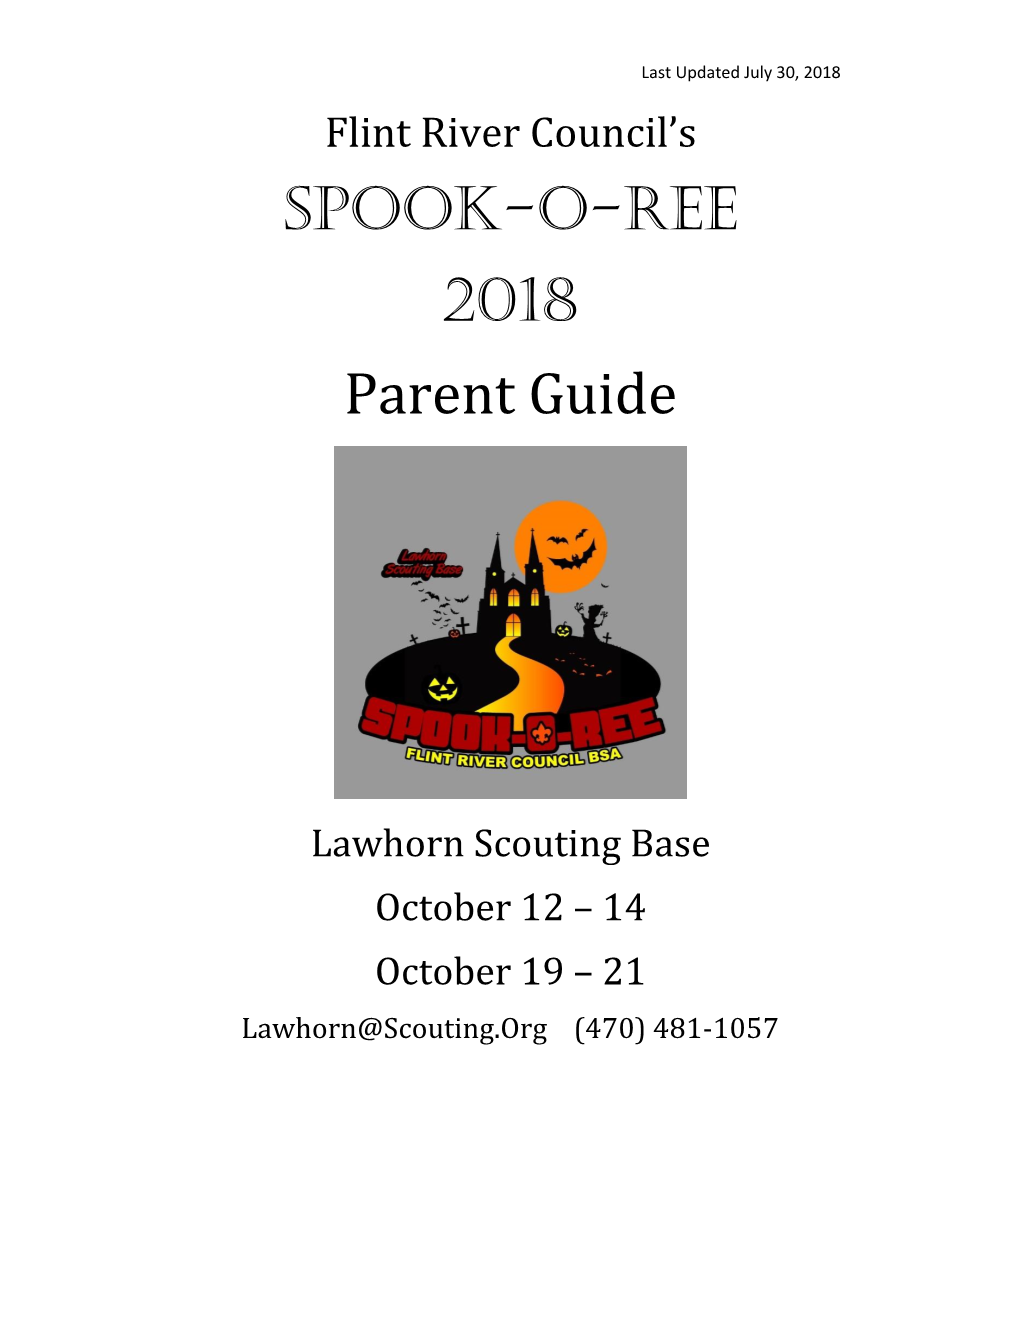 Spook-O-Ree 2018 Parent Guide